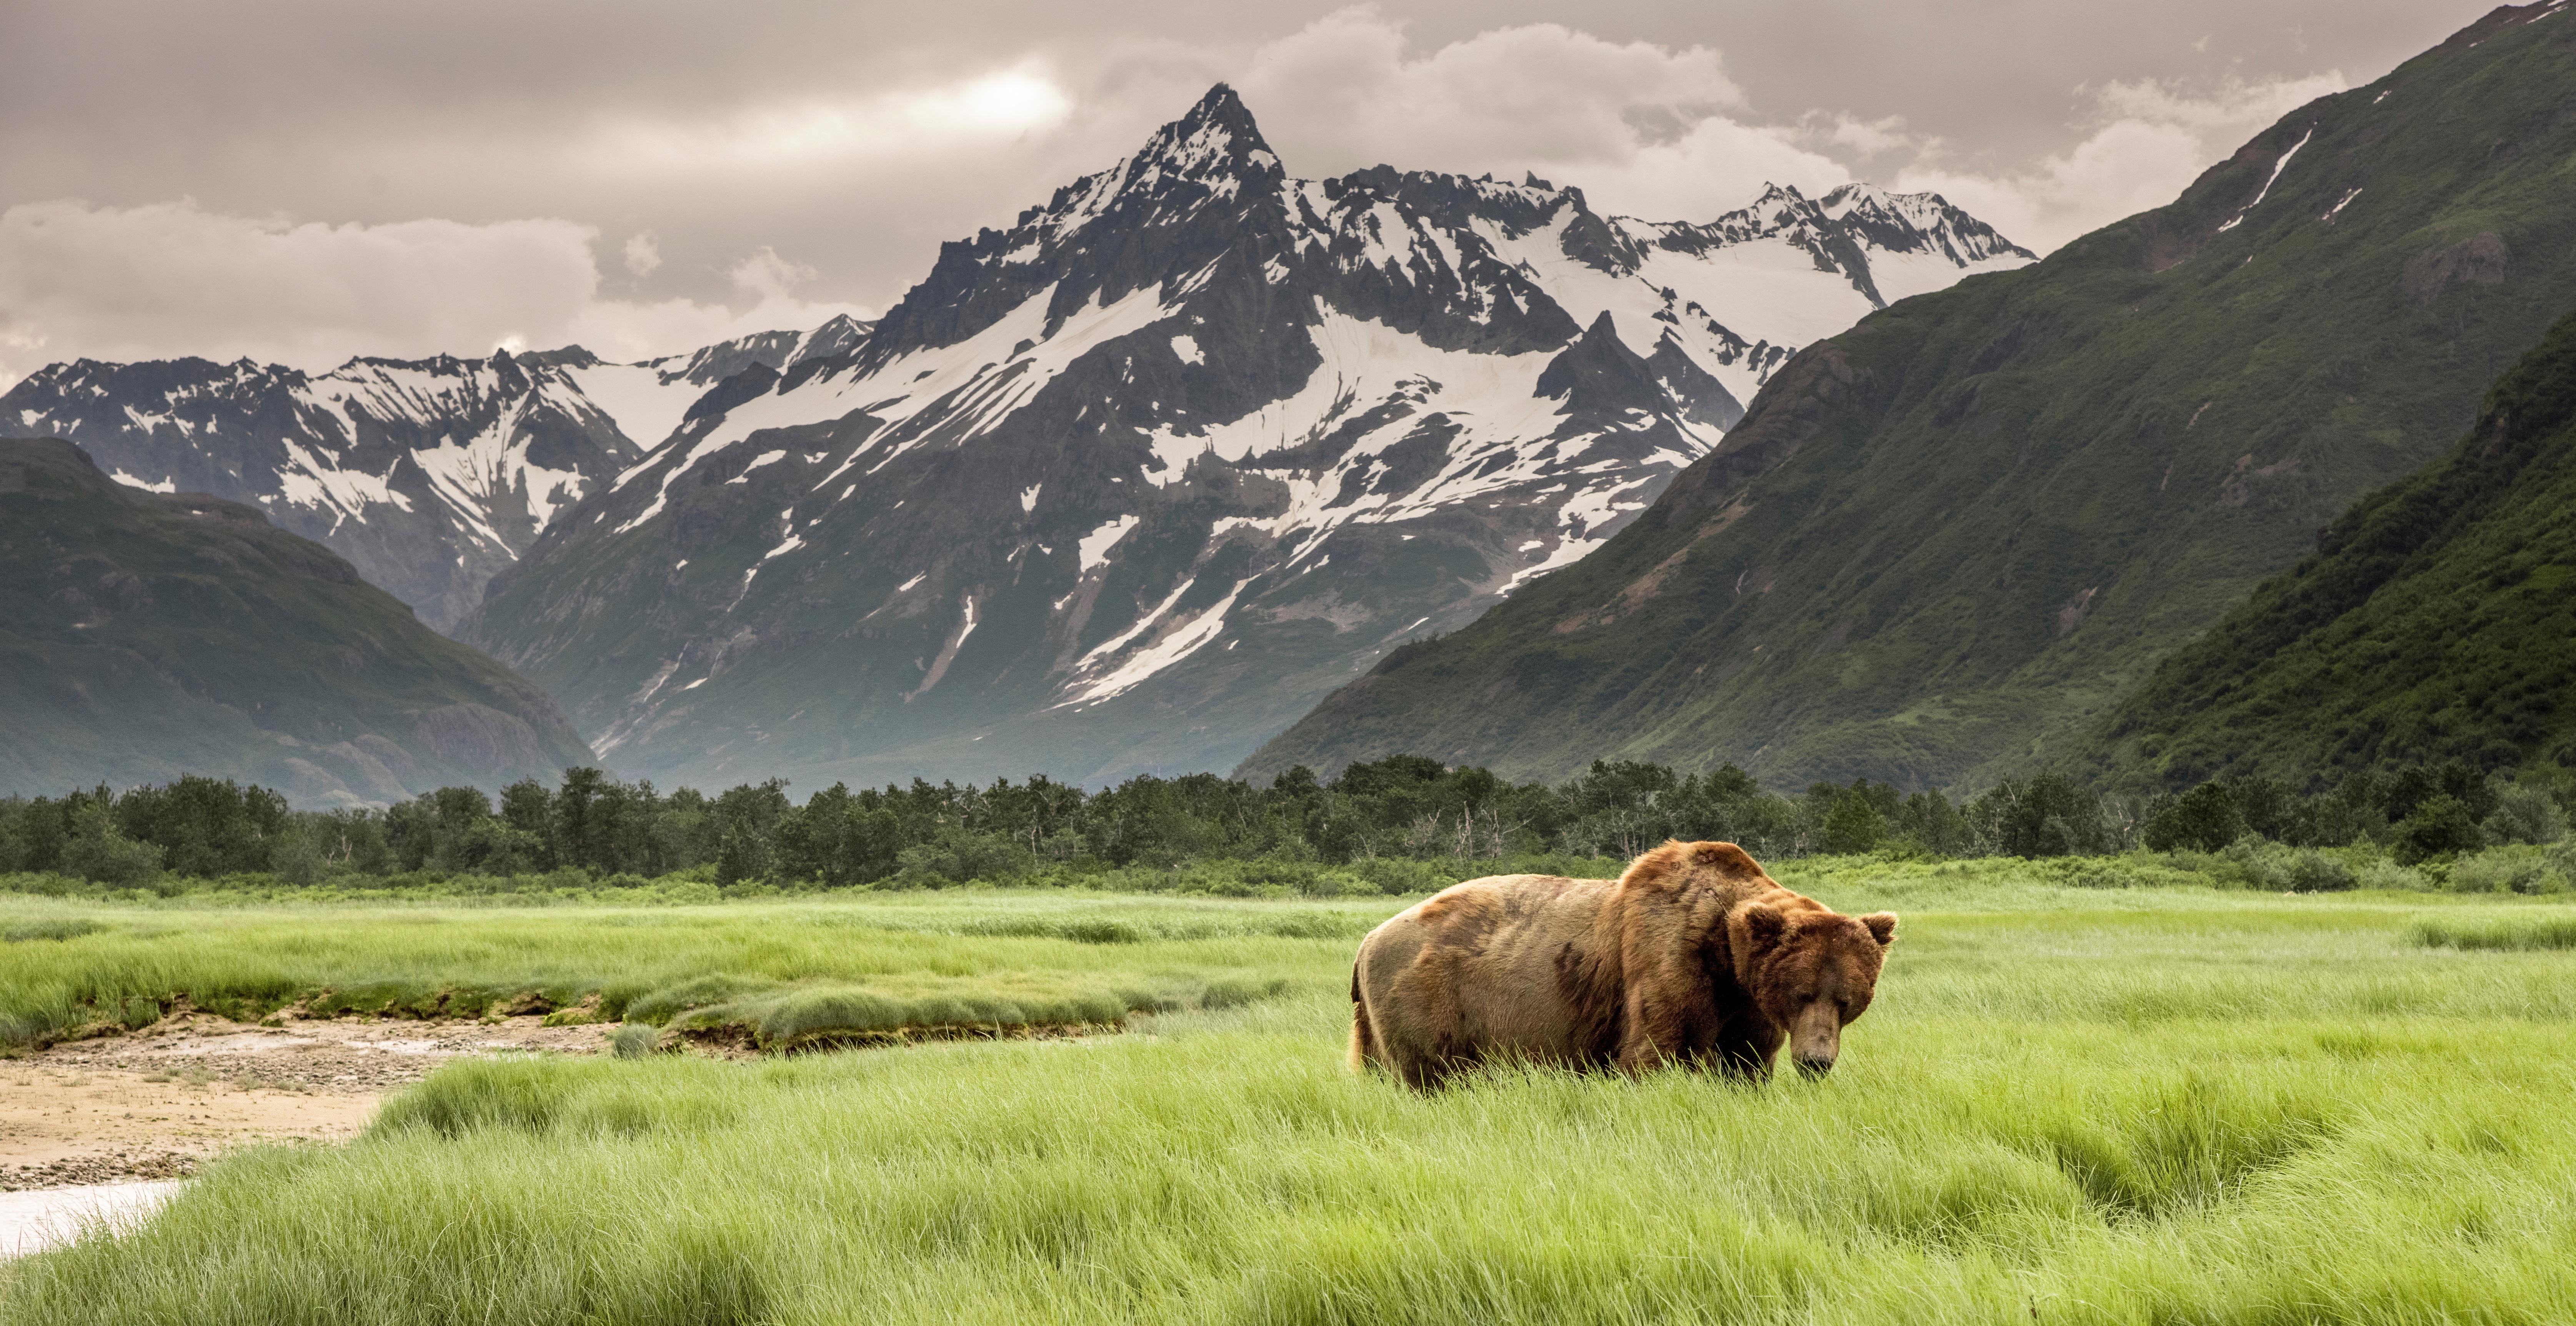 WEB GRIZZLY BEAR ALASKA MOUNTAIN SCENERY Shutterstock